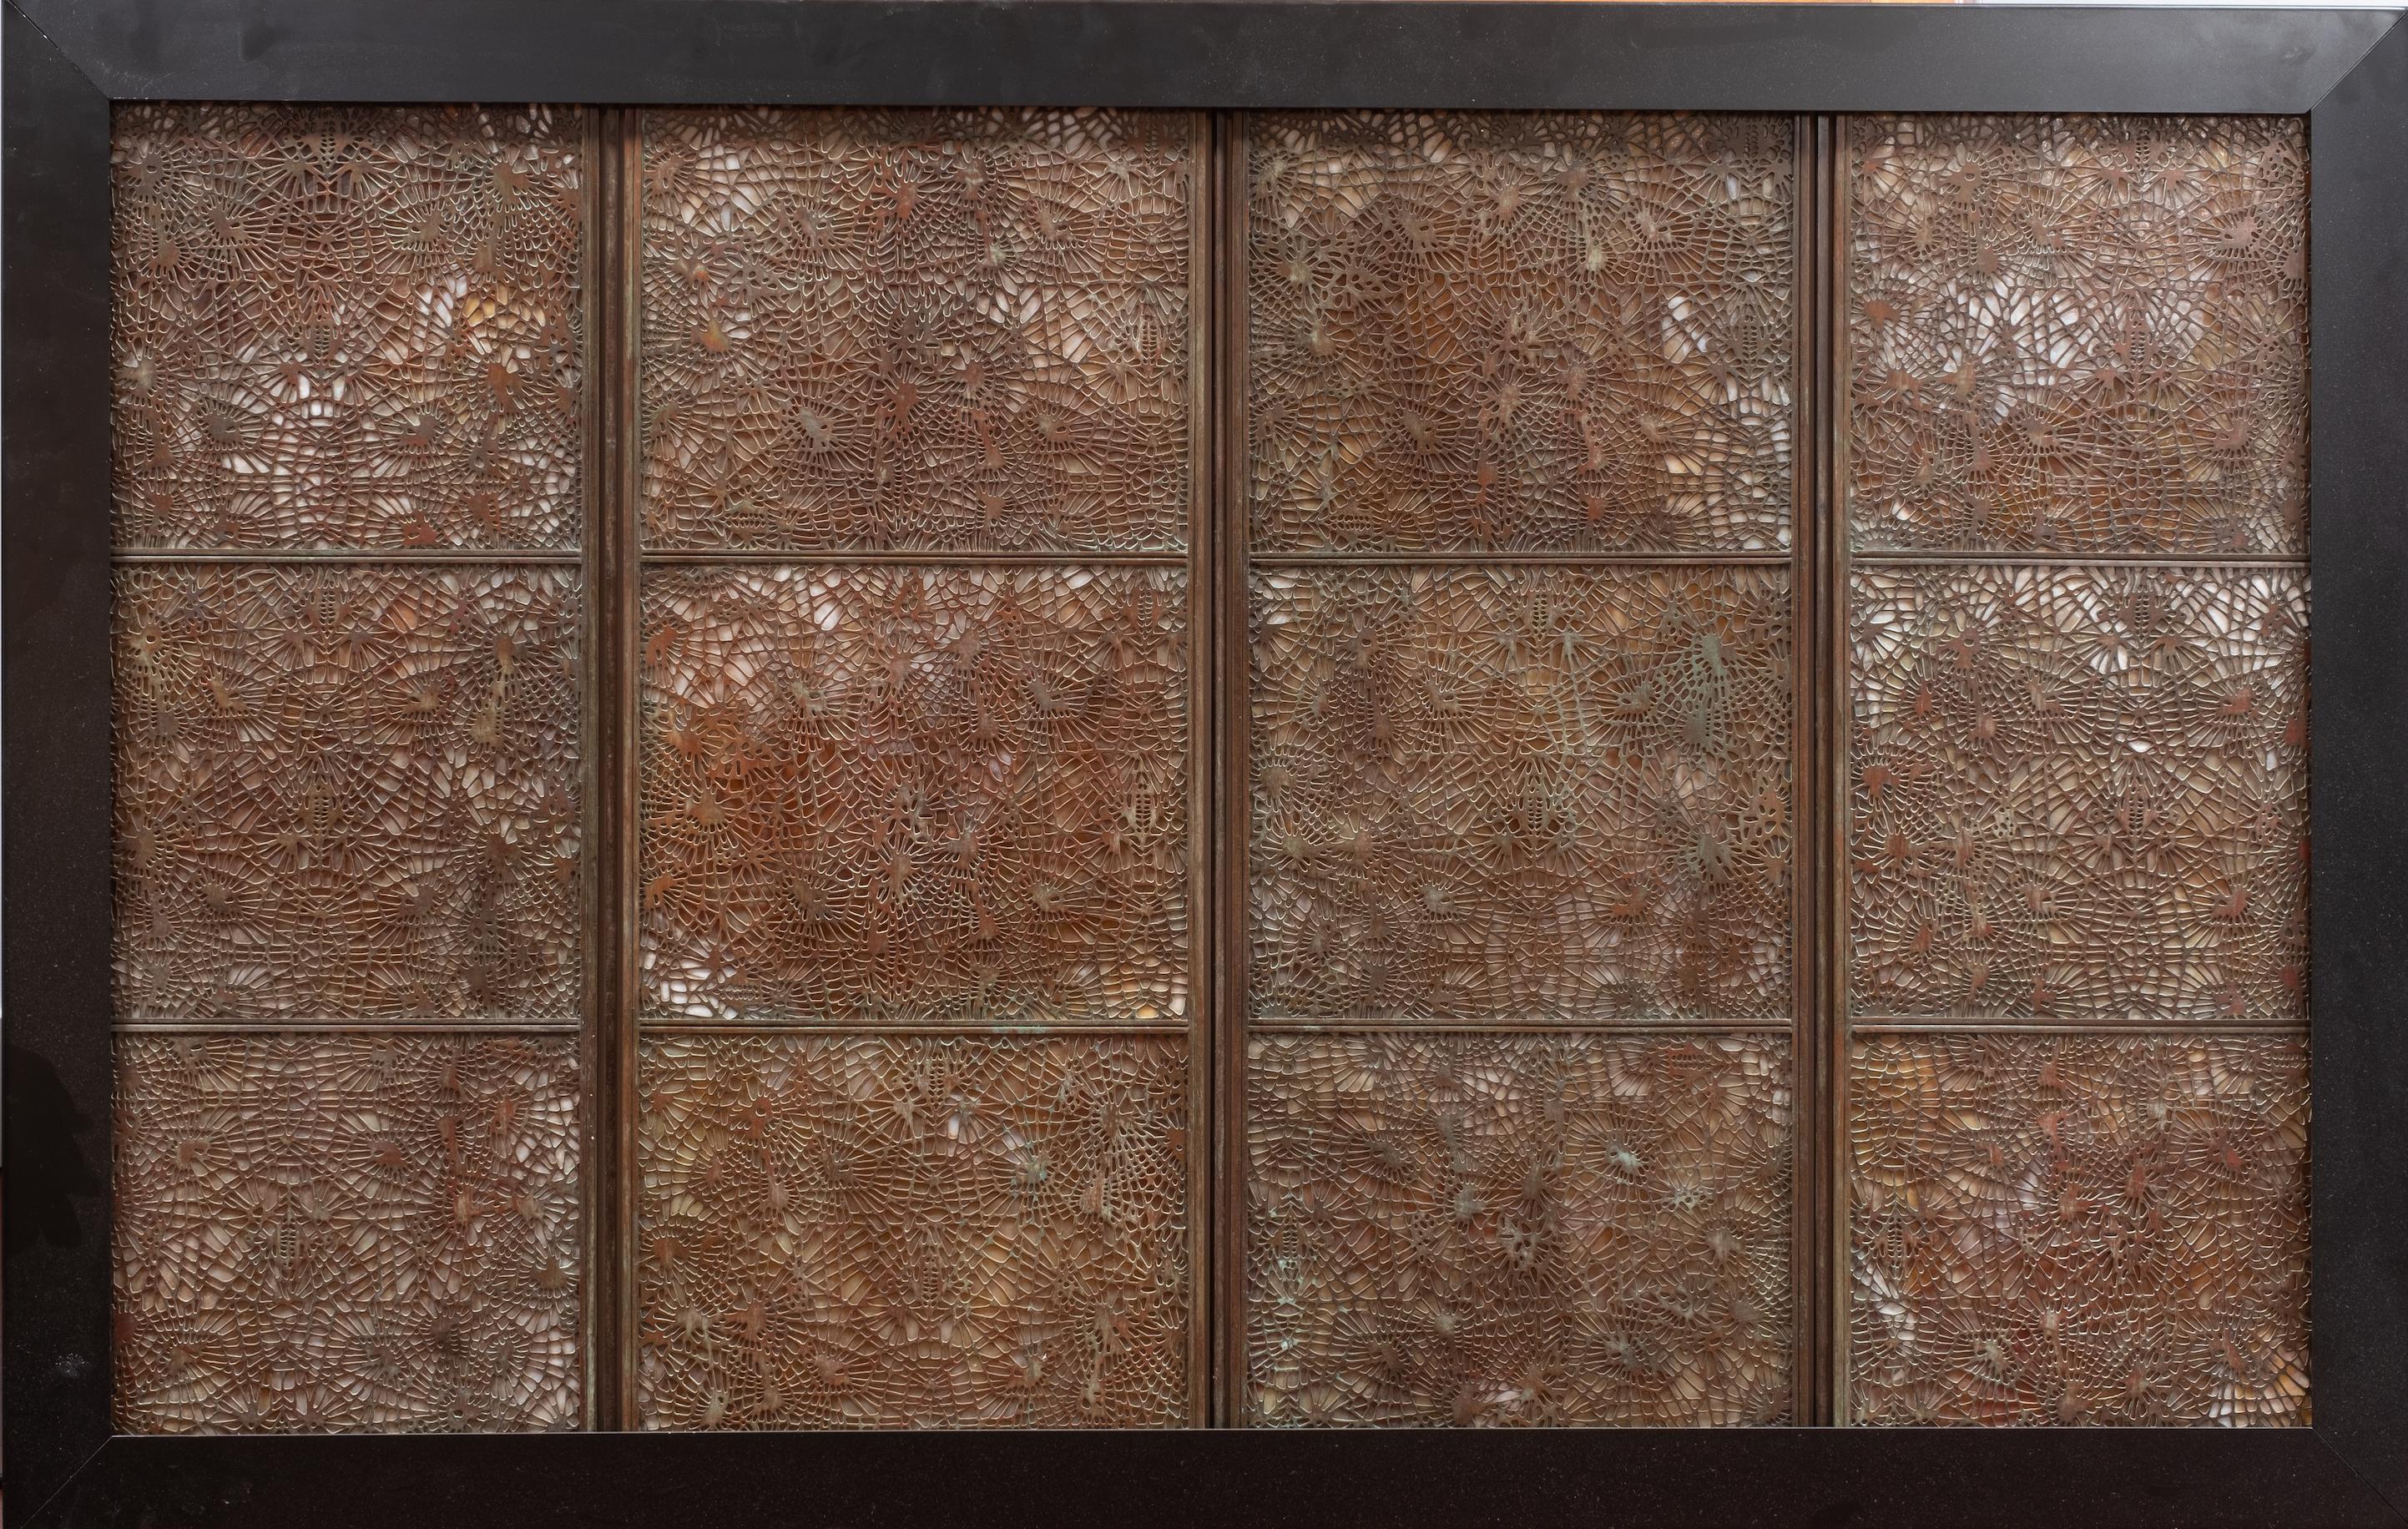 Studios Tiffany, New York, (1878-1930). Ce grand paravent à quatre panneaux en verre favrile et bronze des Studios Tiffany, au motif d'aiguilles de pin, a été monté en qualité galerie dans une boîte à lumière murale en métal noir. Pas de marque de